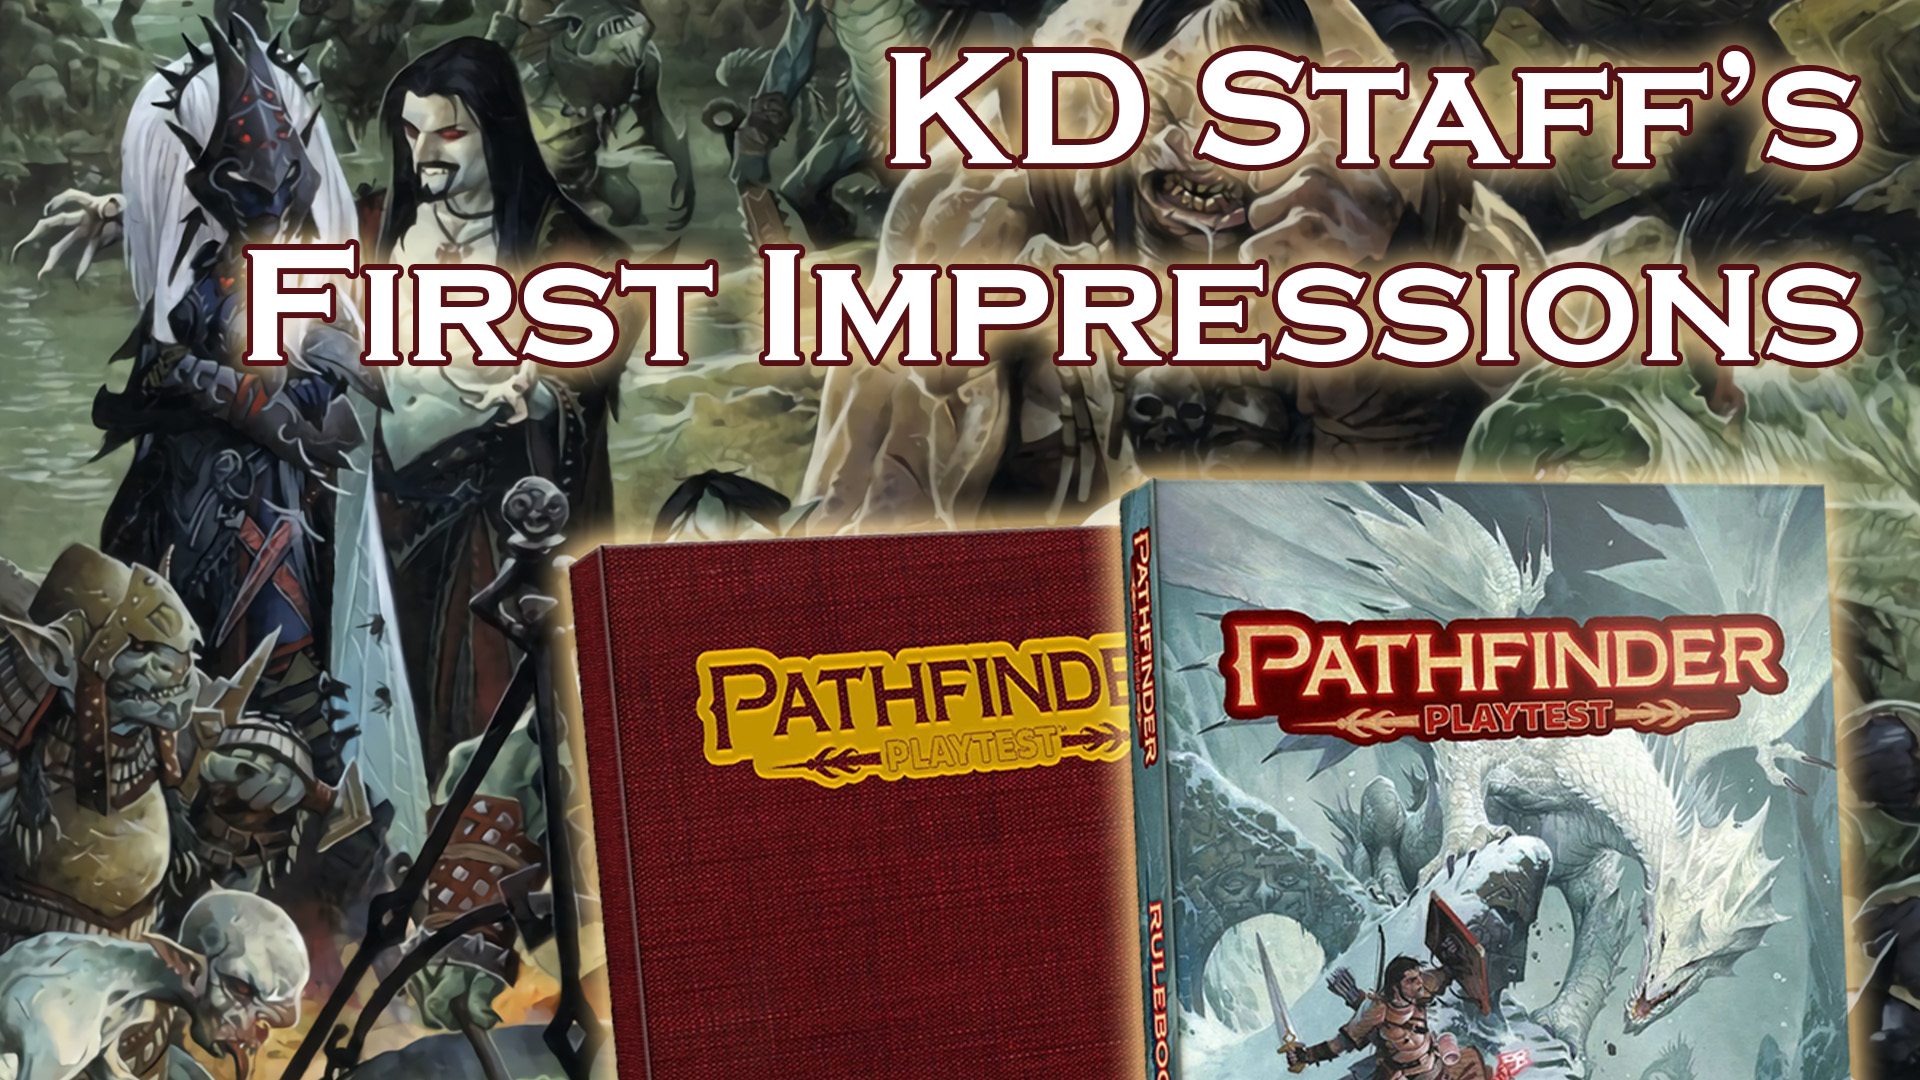 KD Staff's First Impressions